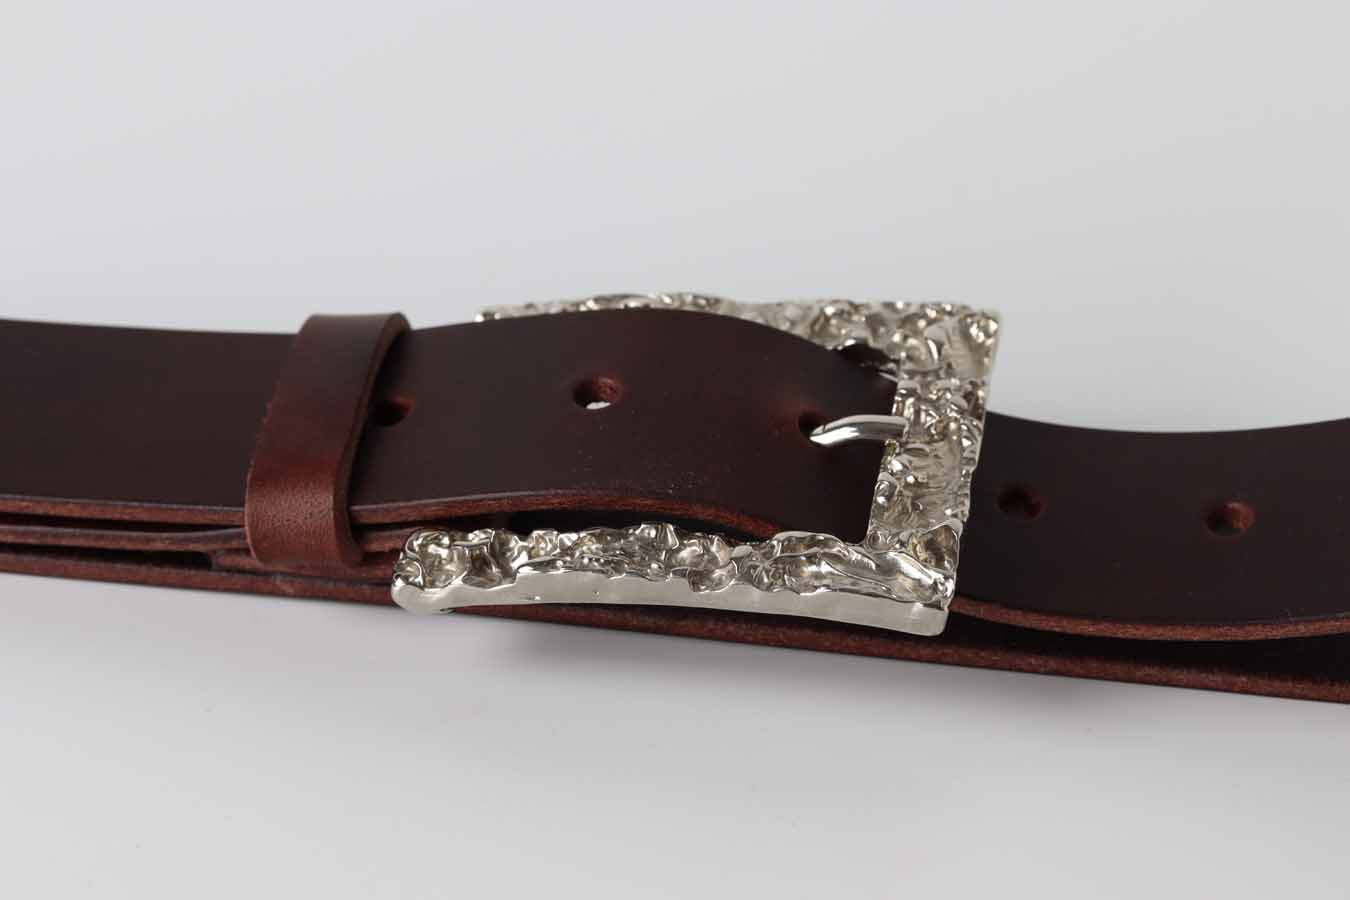 unisex leather belt